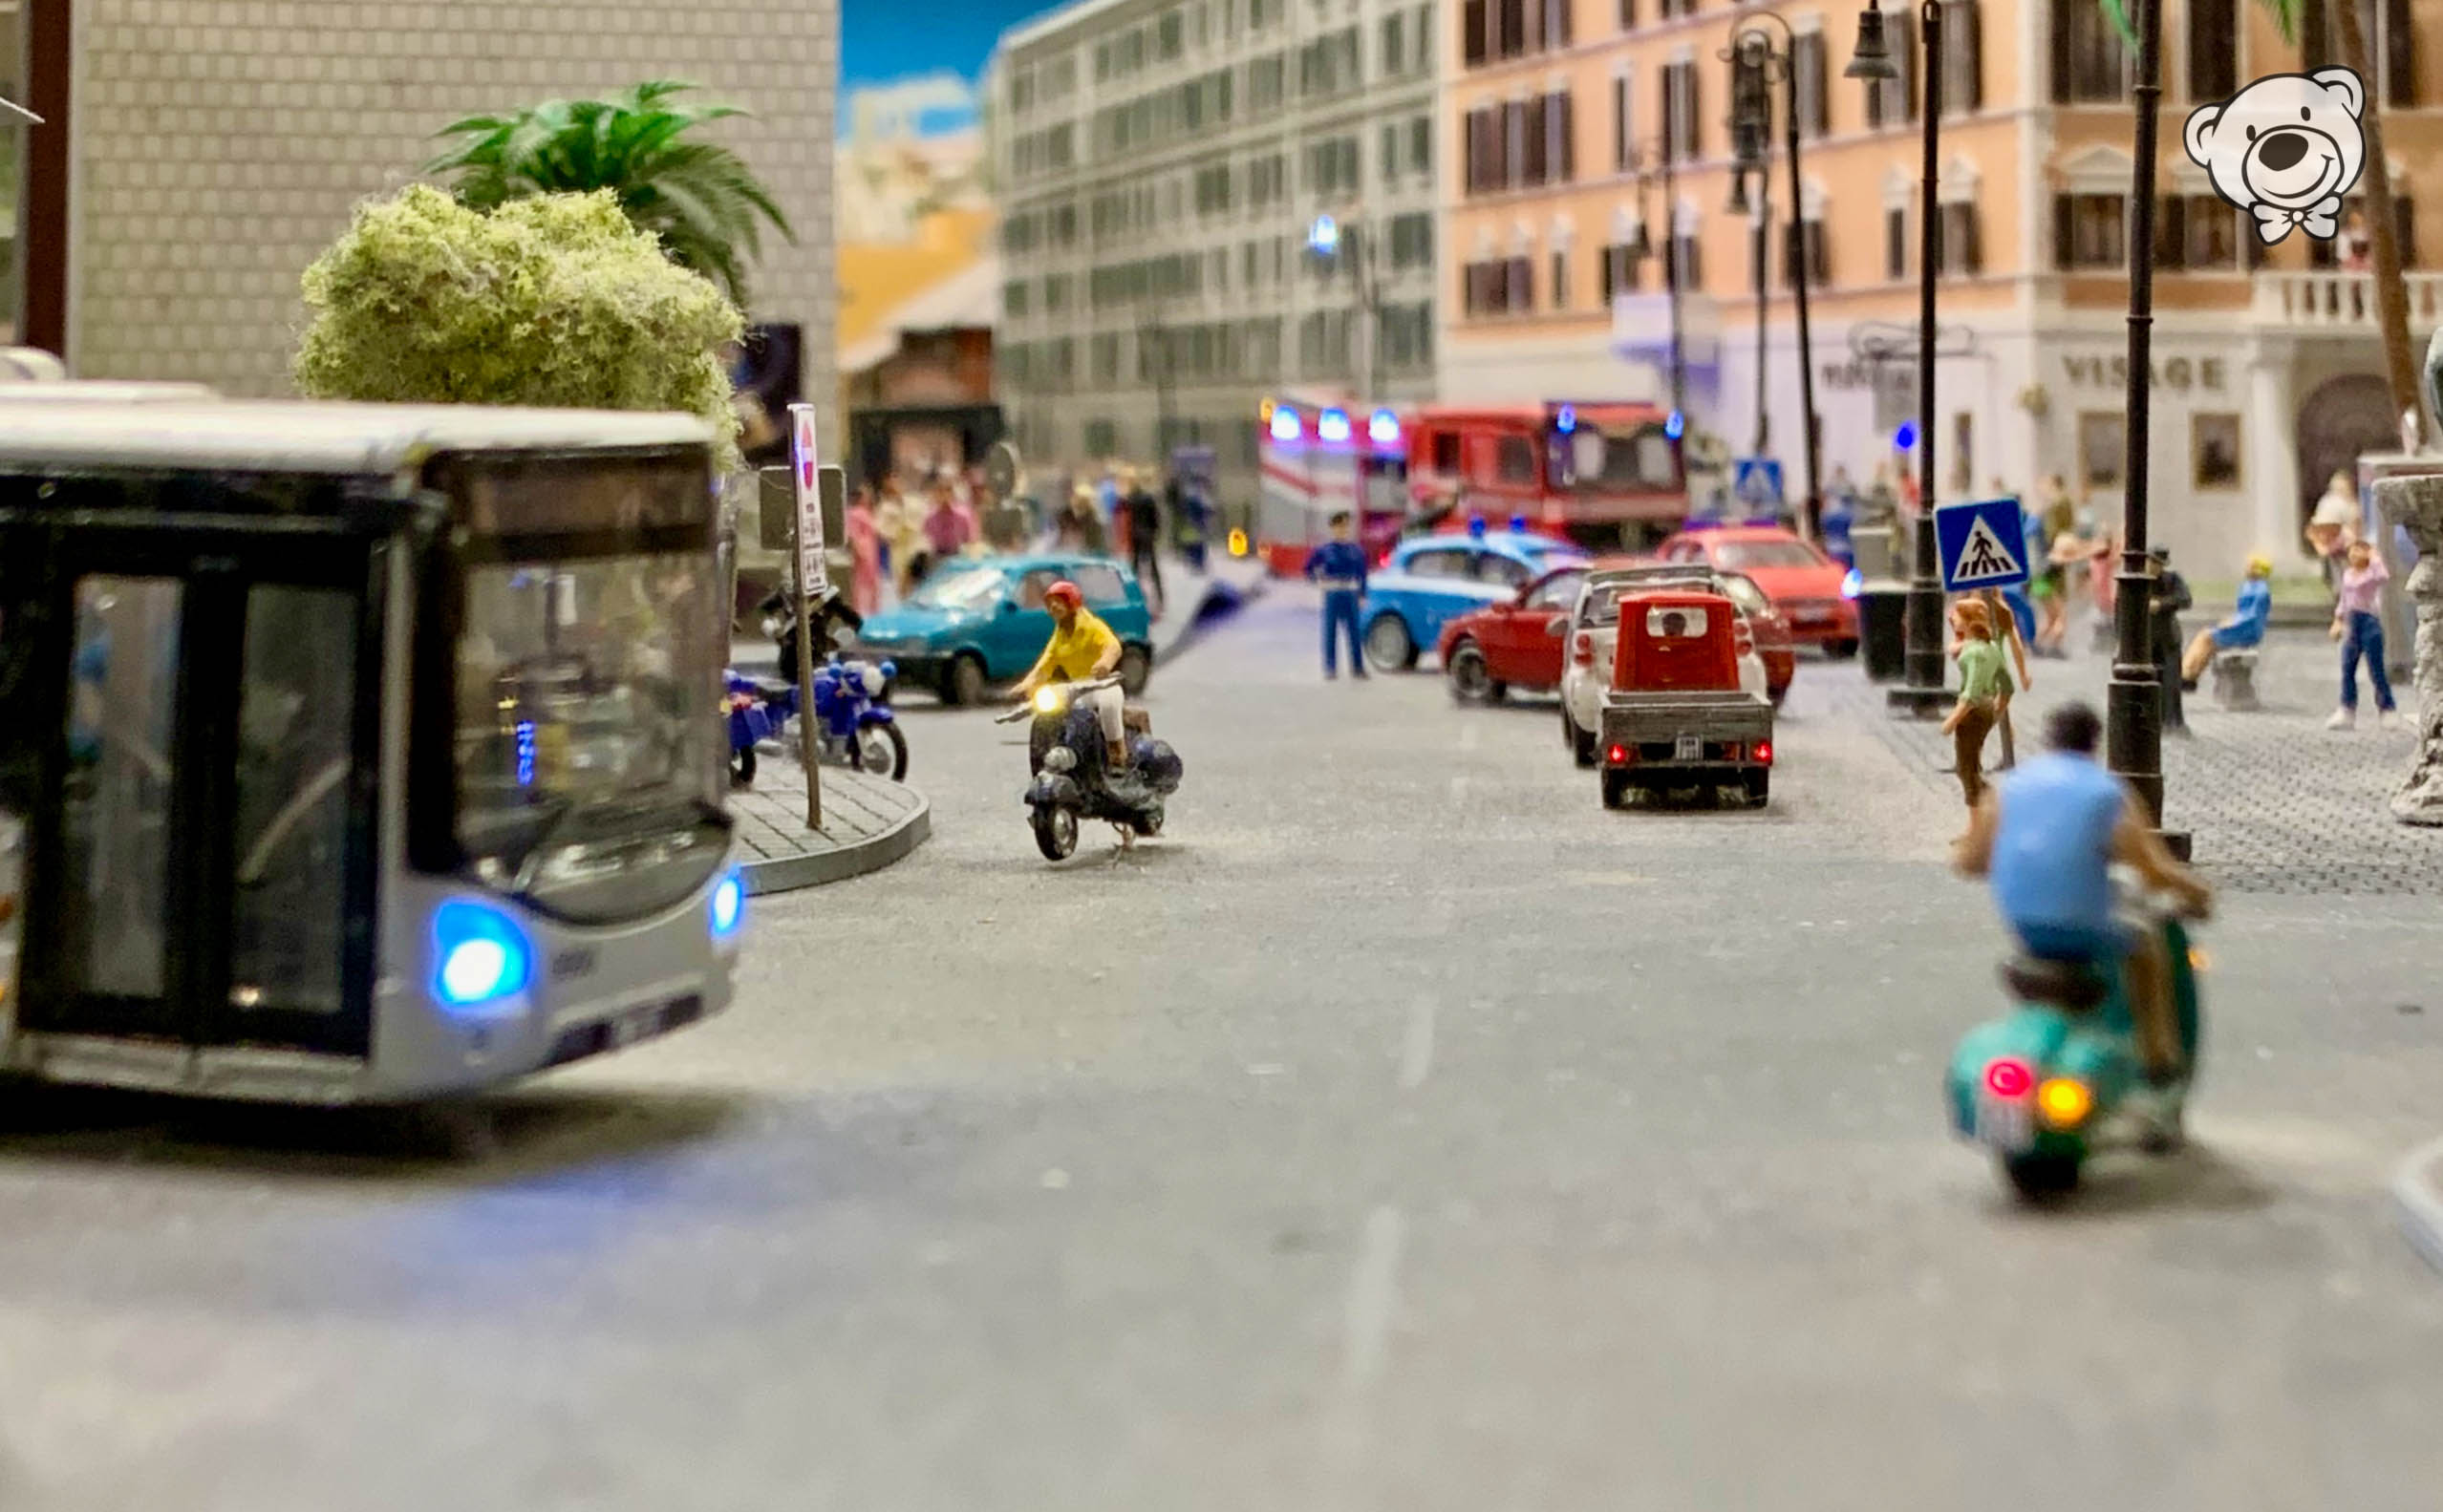 Modell Straße in Italien im Miniaturwunderland in Hamburg, Stau am Fußgängerüberweg, Bus und Feuerwehr-Einsatz sind zu sehen